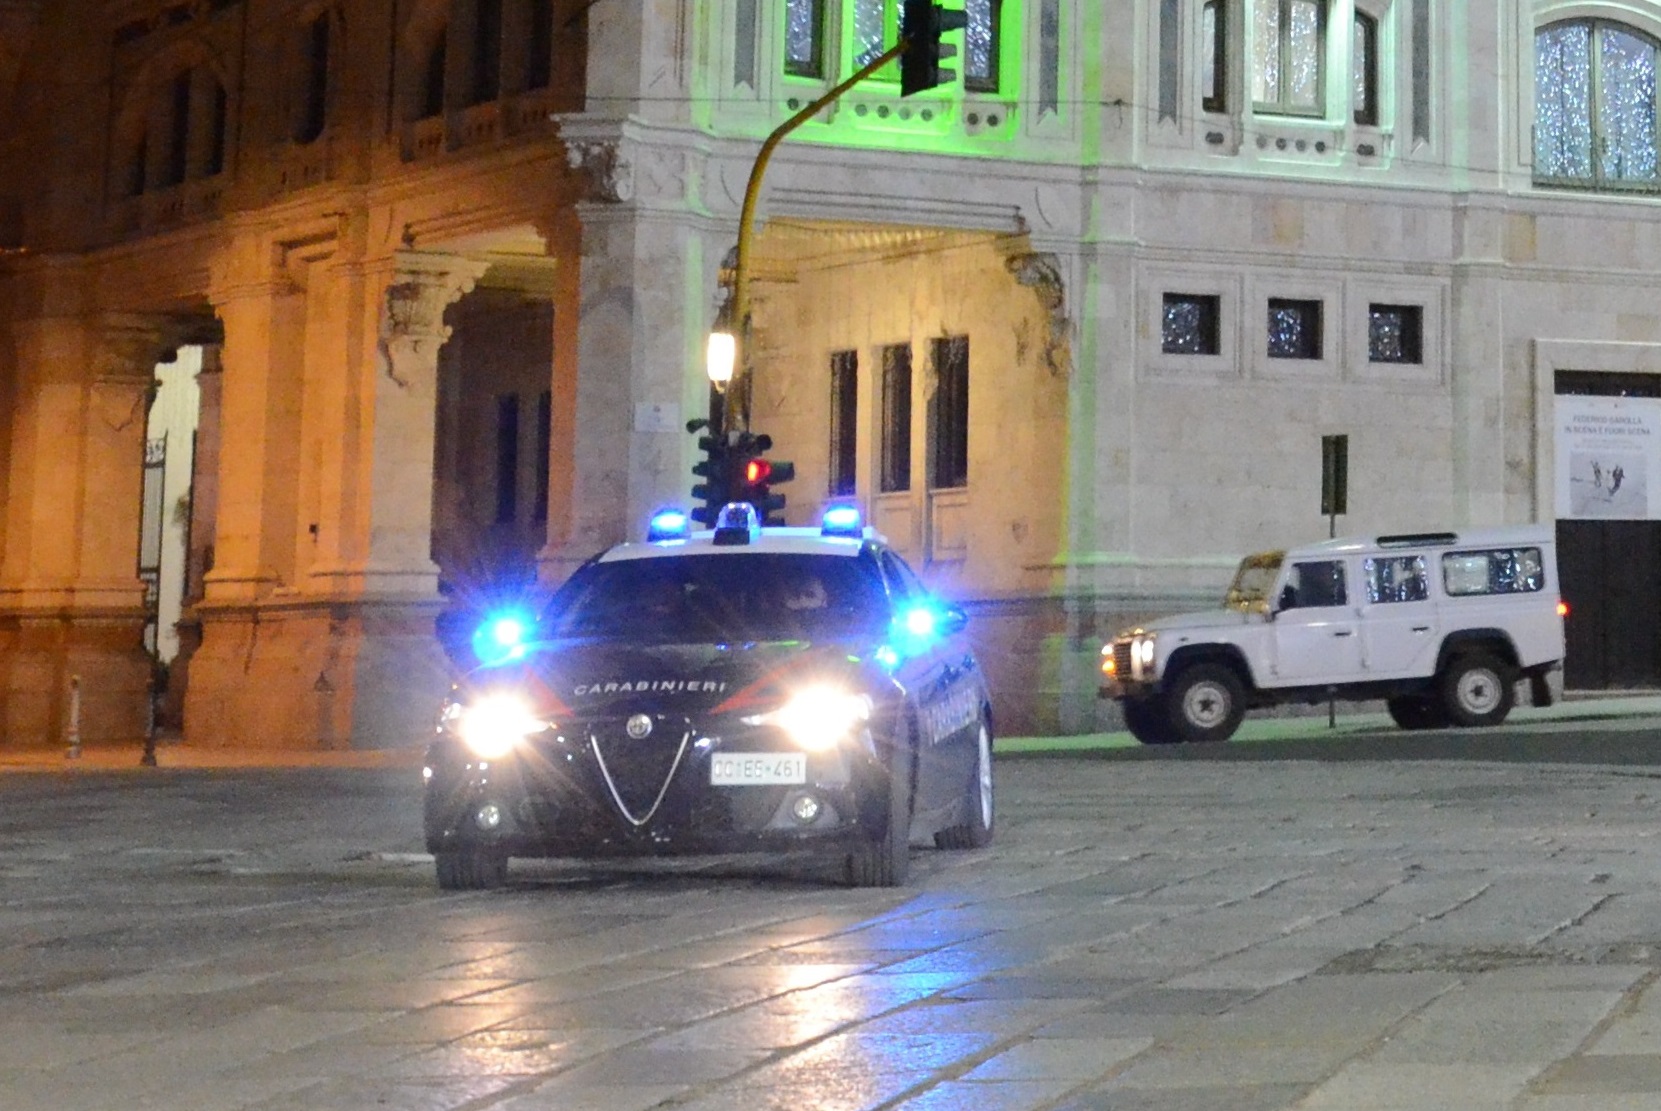 Cagliari. Guardia giurata soccorre un 26enne sanguinante: il giovane reagisce tentando di prendergli la pistola 